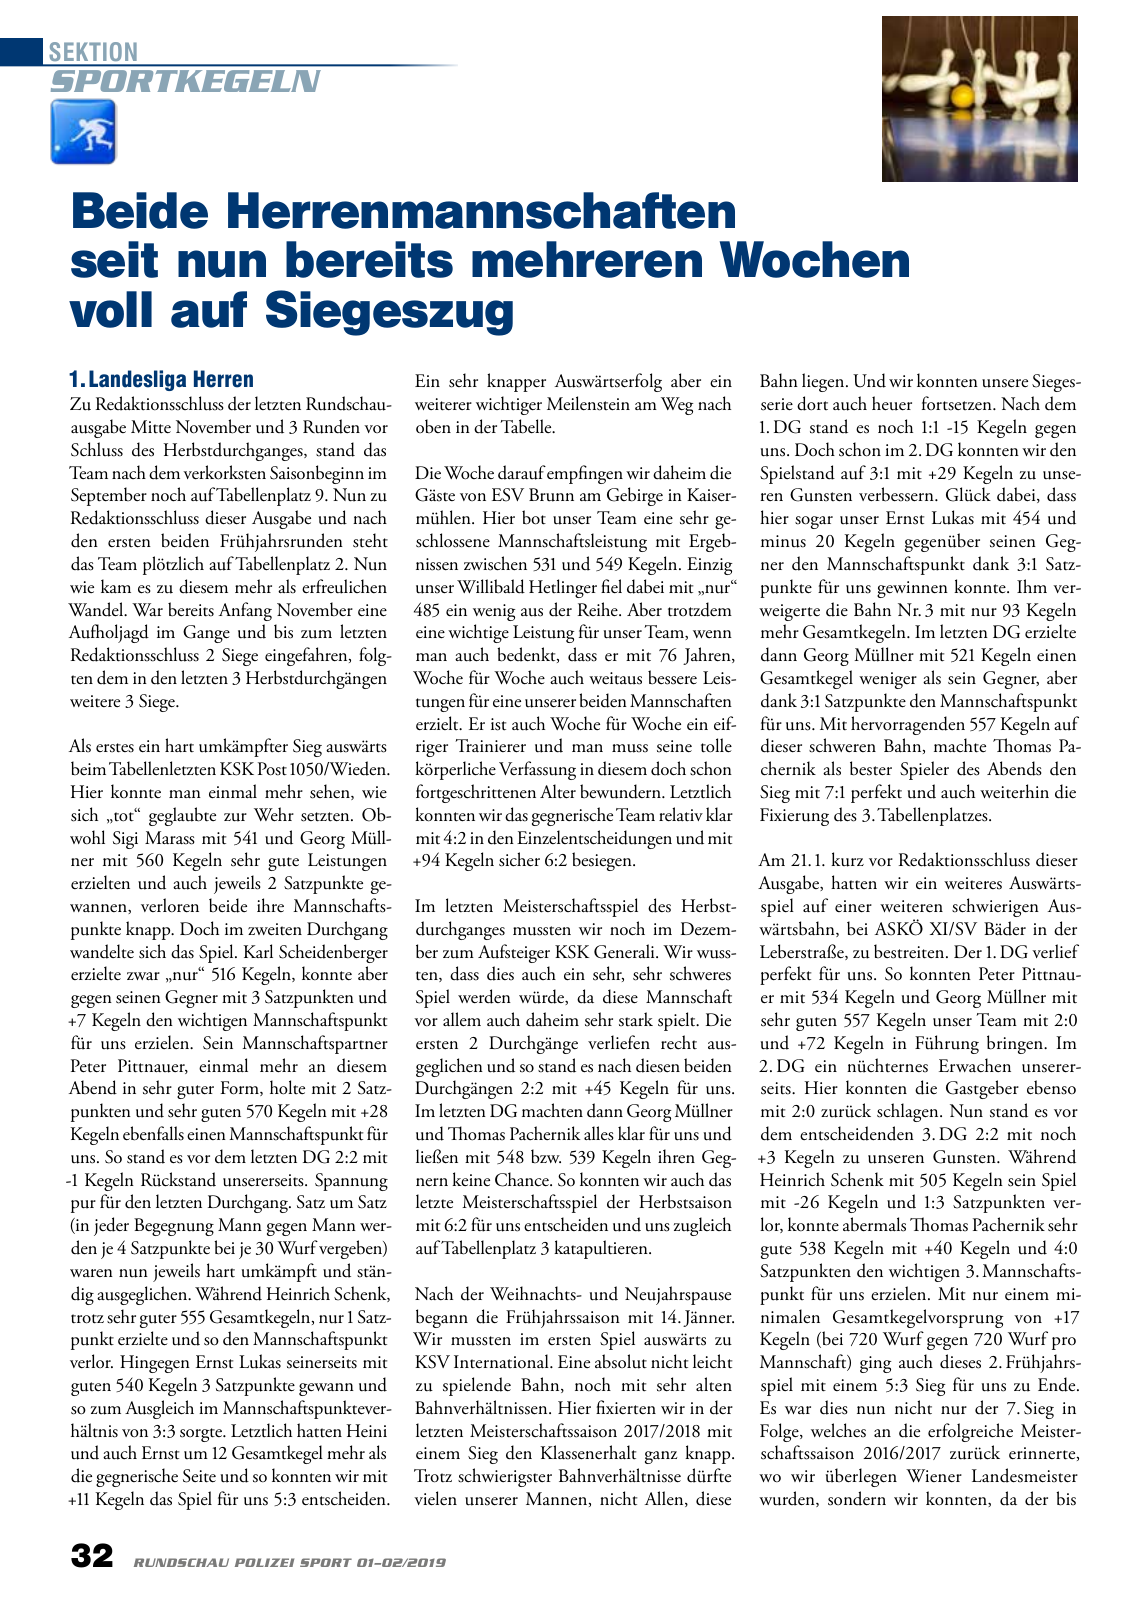 Vorschau Rundschau Polizei Sport 01-02/2019 Seite 32